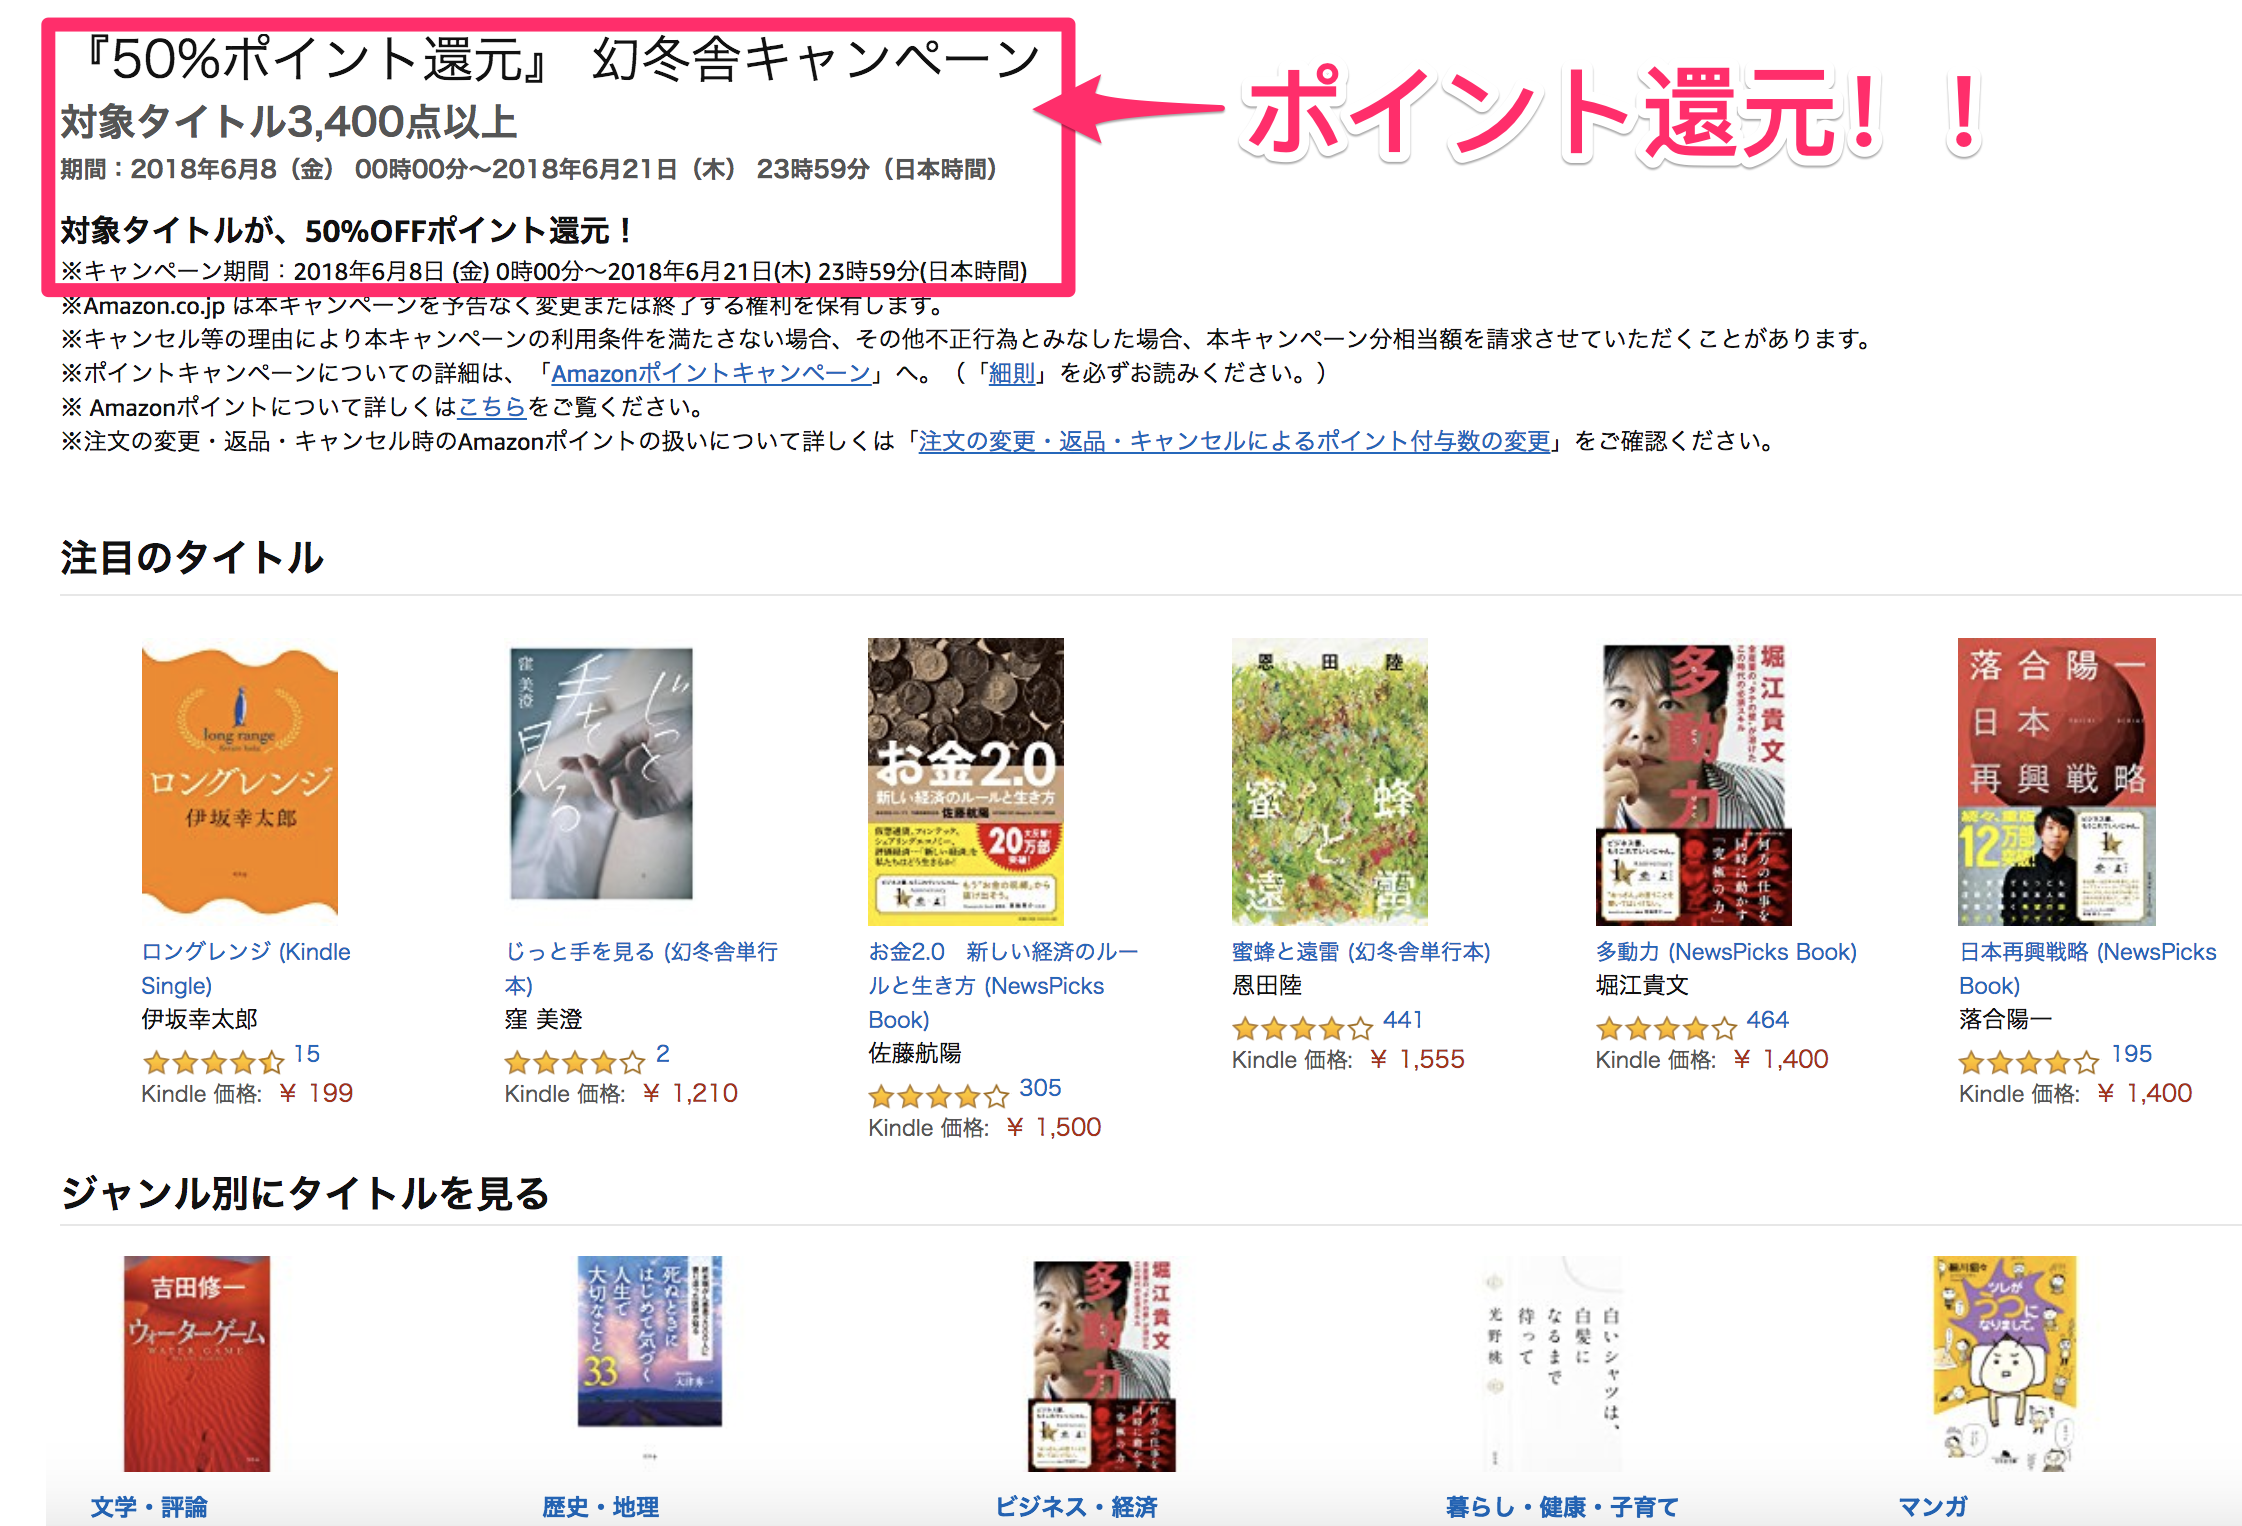 Amazon 50 ポイント還元 幻冬舎キャンペーン なんと 今回amazon Kindleで 50 ポイント還元 By 里 優裕 Ysuke Sato Sales Technology Lab